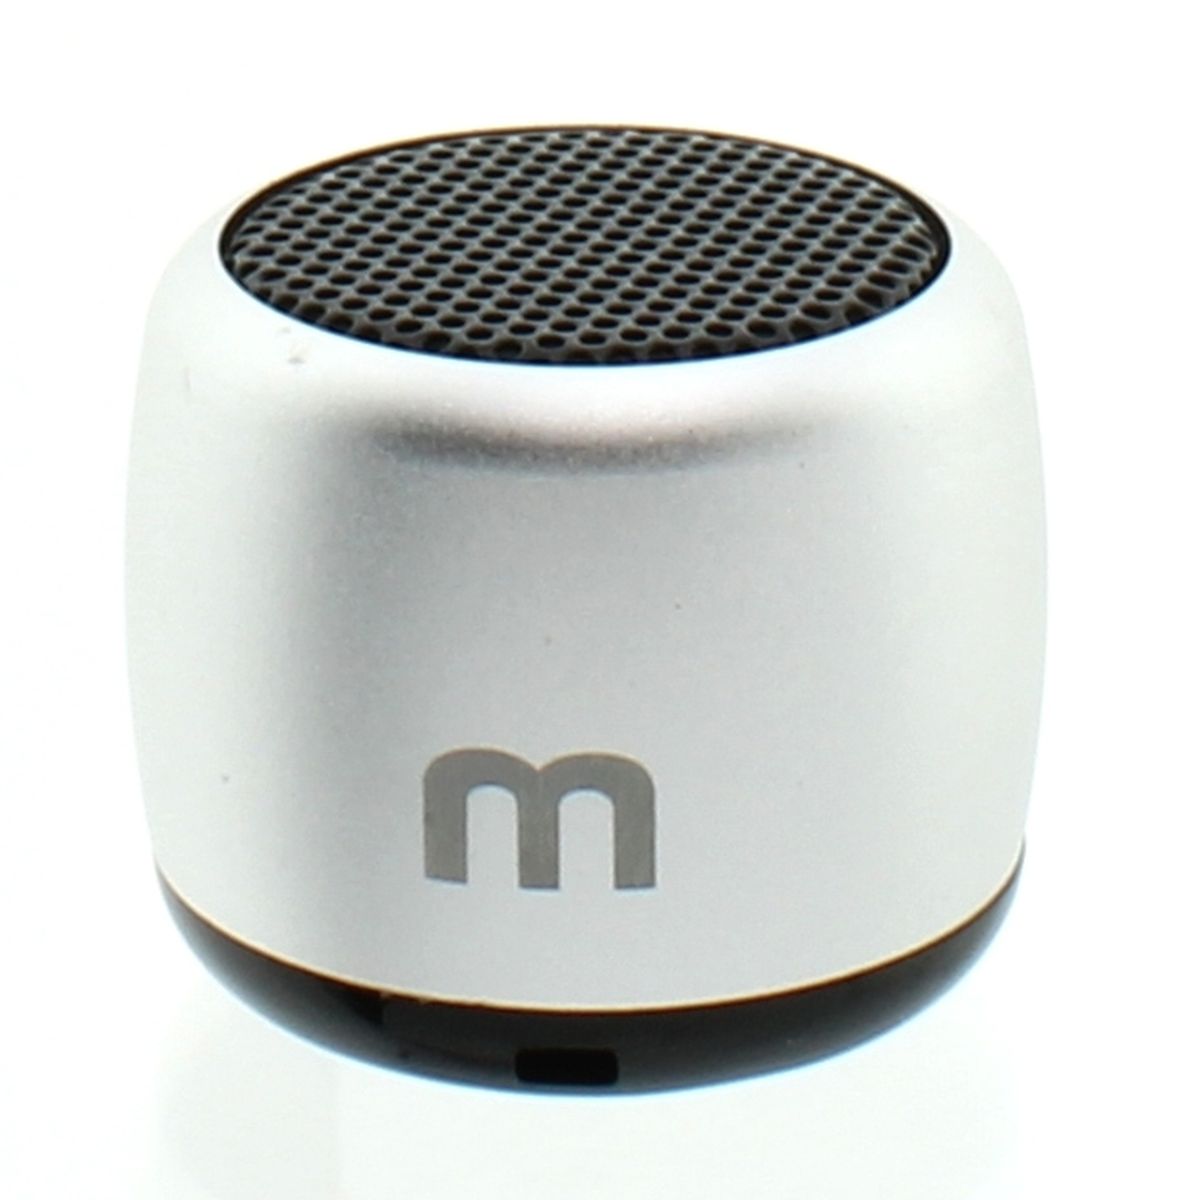 45994 - Bluetooth Mini Speaker Europe